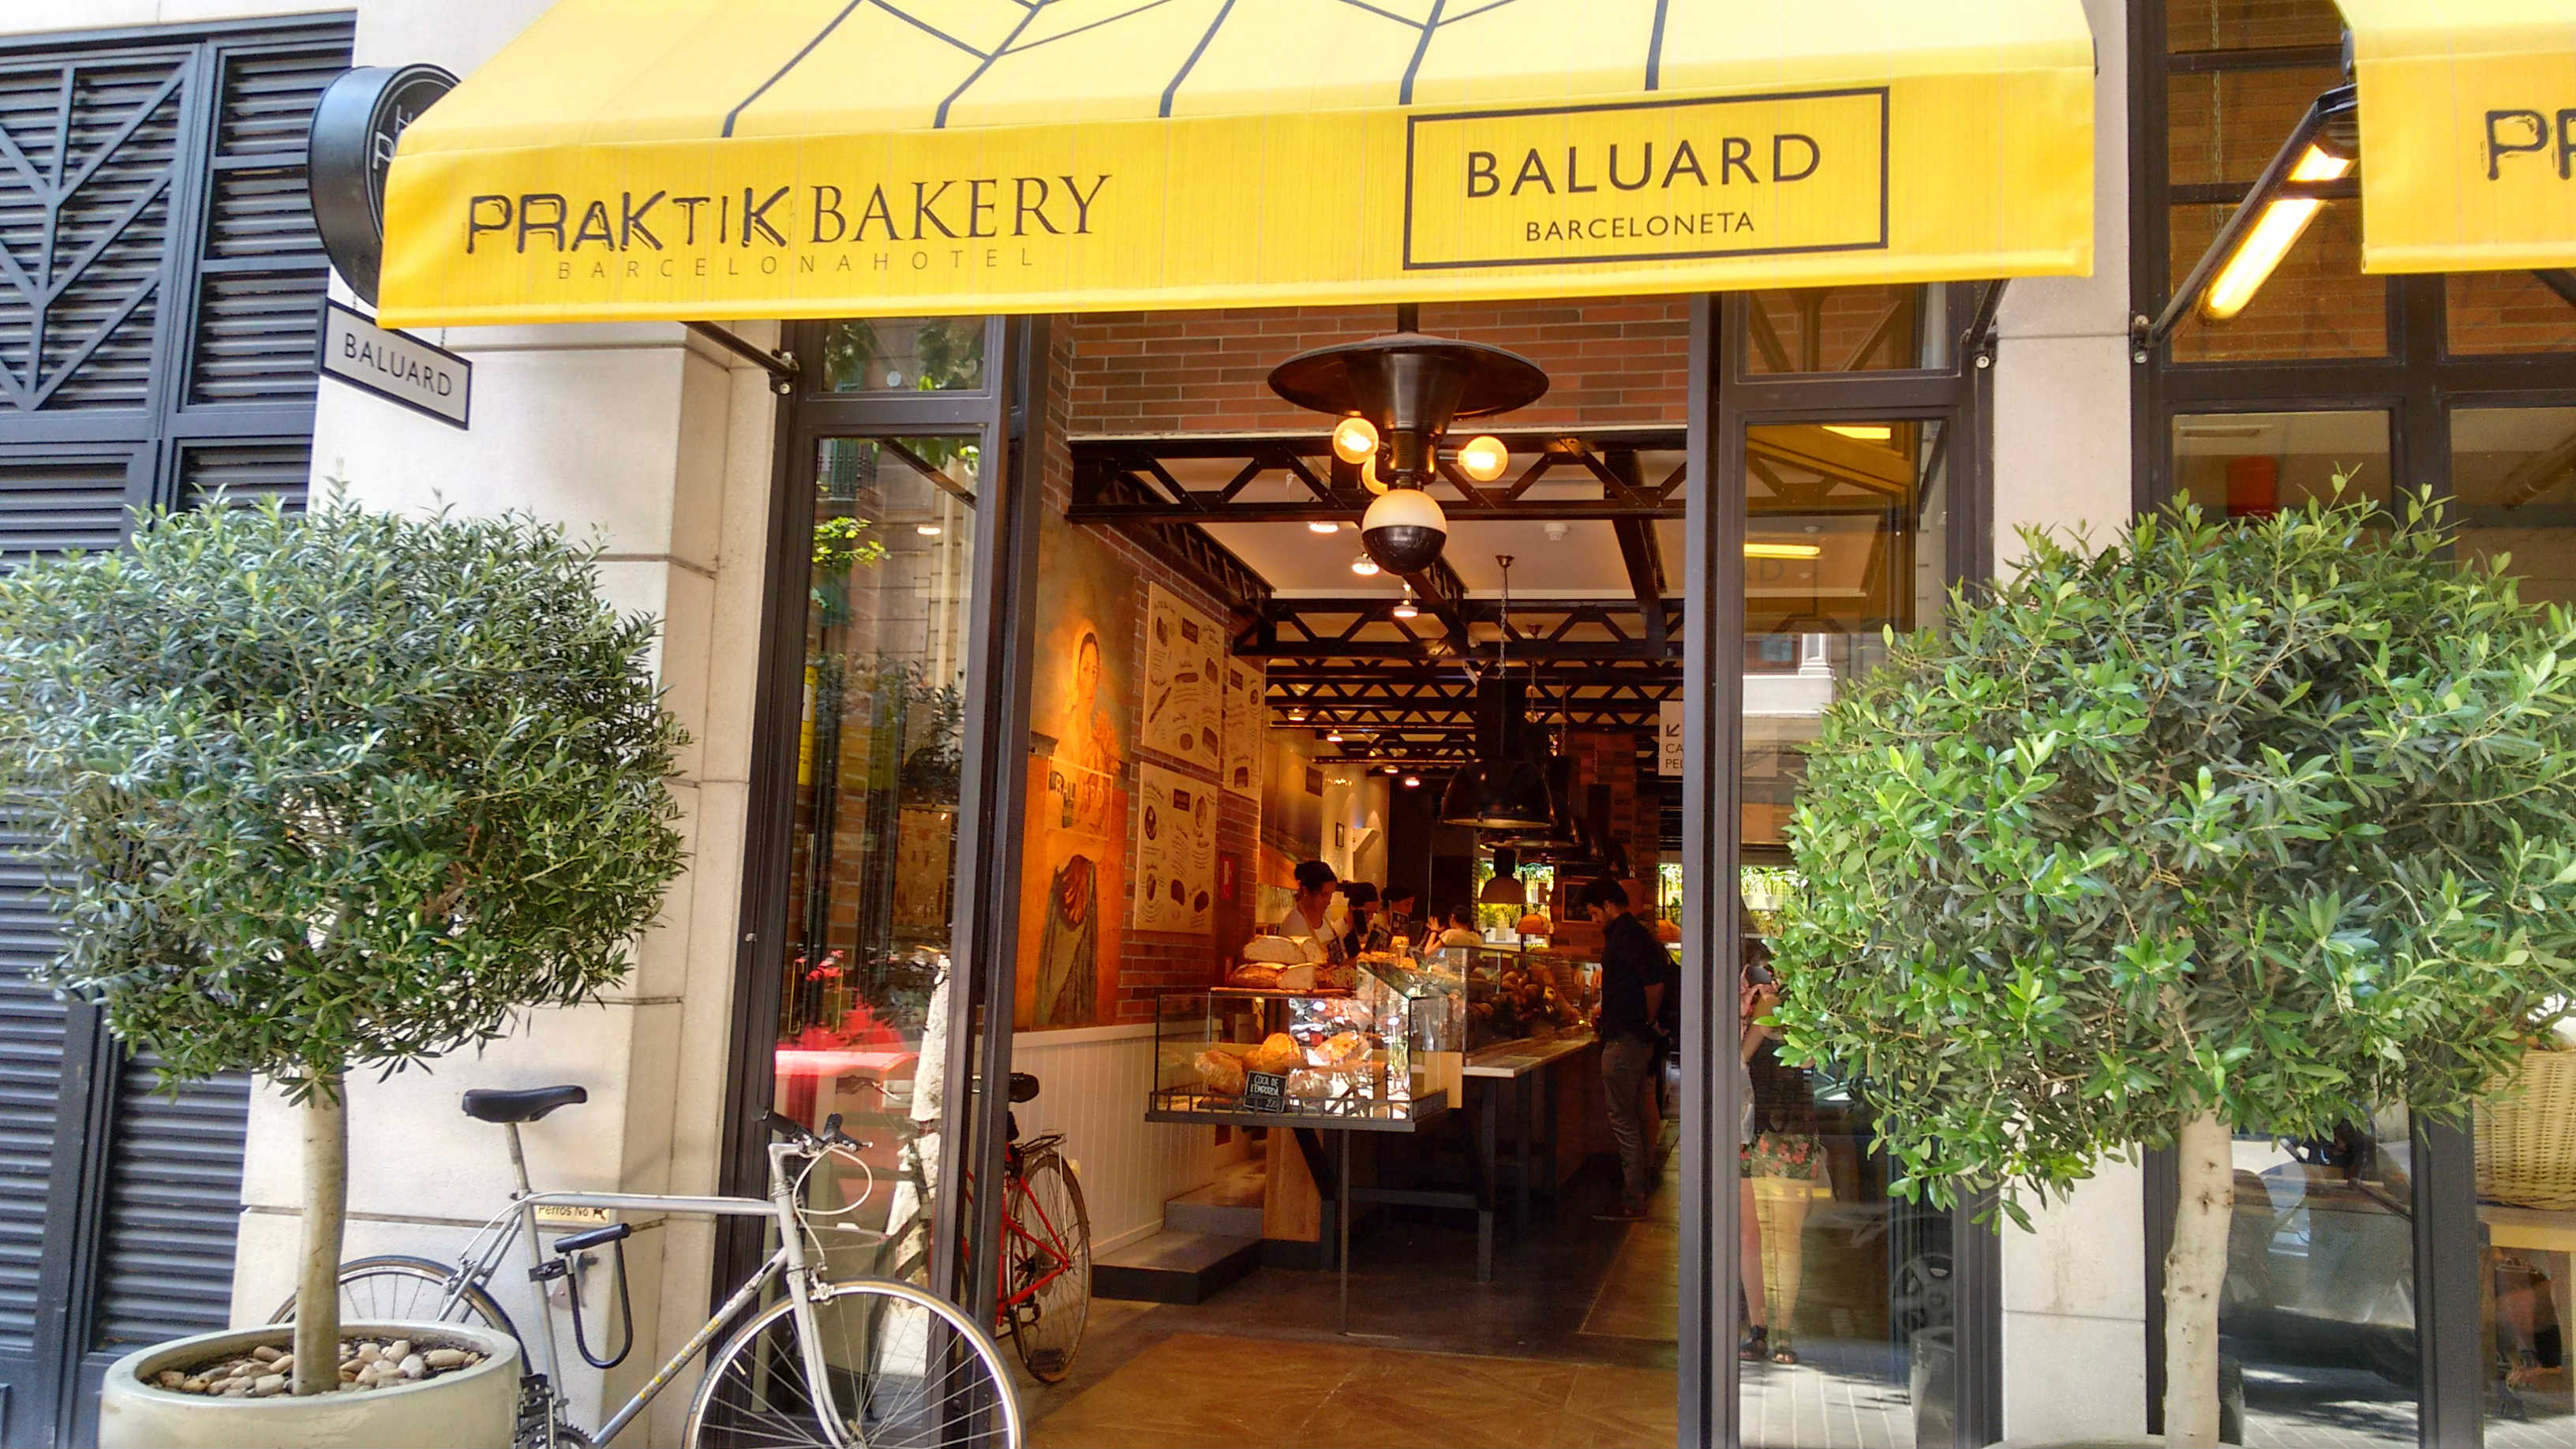 Baluard: pan hecho a mano en Barcelona